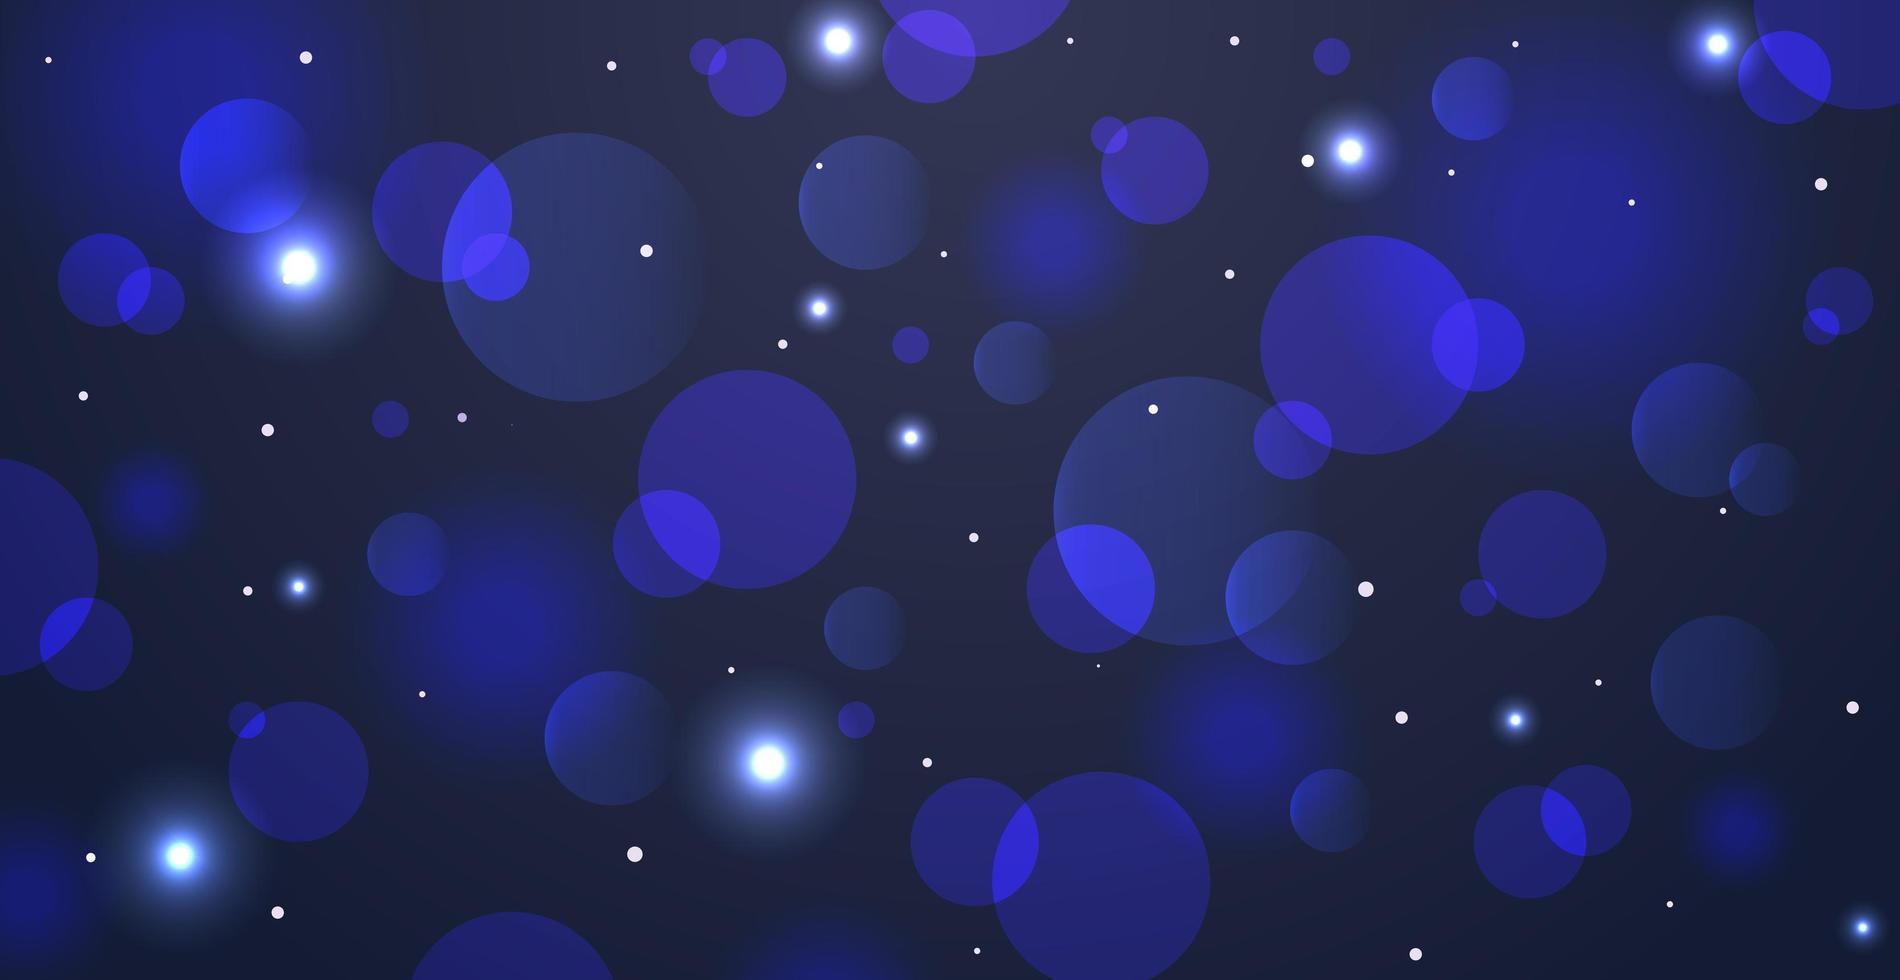 fundo abstrato azul bokeh com círculos desfocados e glitter. elemento de decoração para feriados de Natal e ano novo, cartões, banners da web, cartazes - vetor